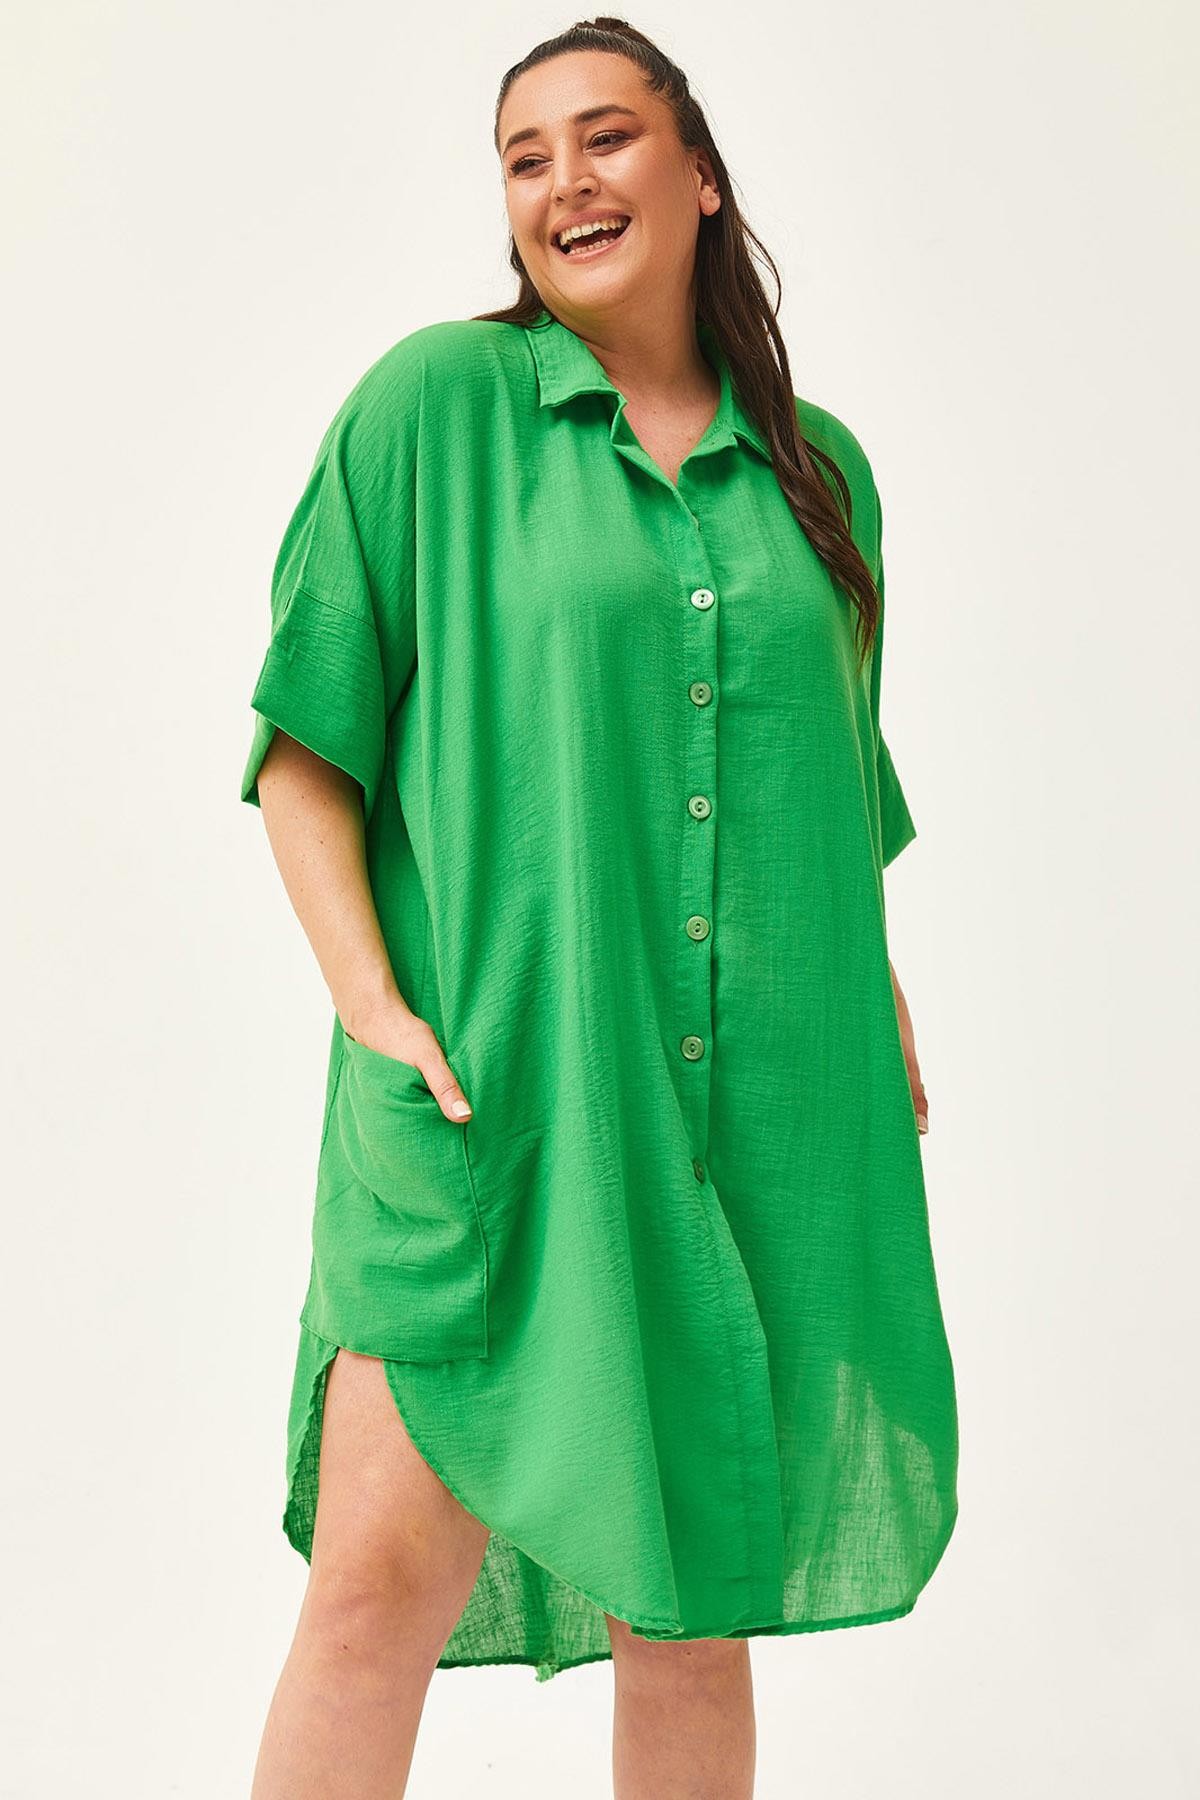 Kadın Büyük Beden Düşük Kol Ekstra Rahat Kalıp Keten Gömlek Elbise - Yeşil